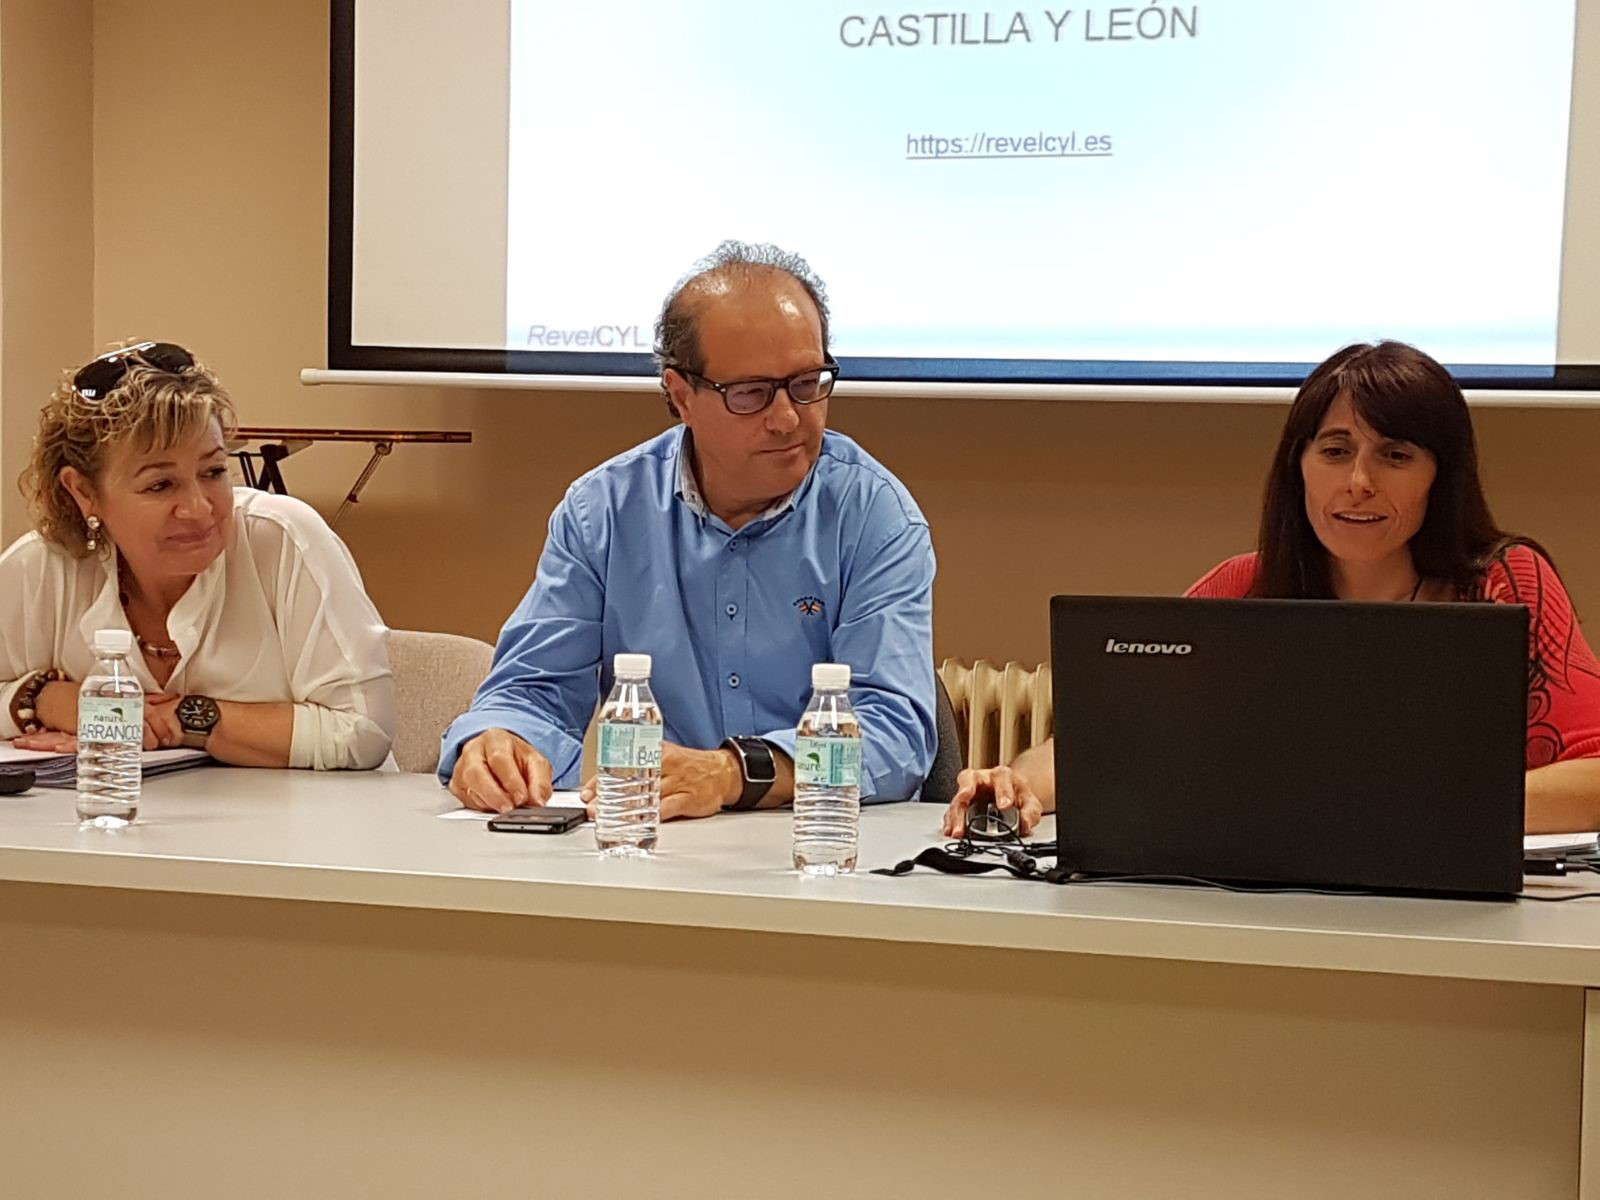 Presentada la receta veterinaria electrónica de Castilla y León